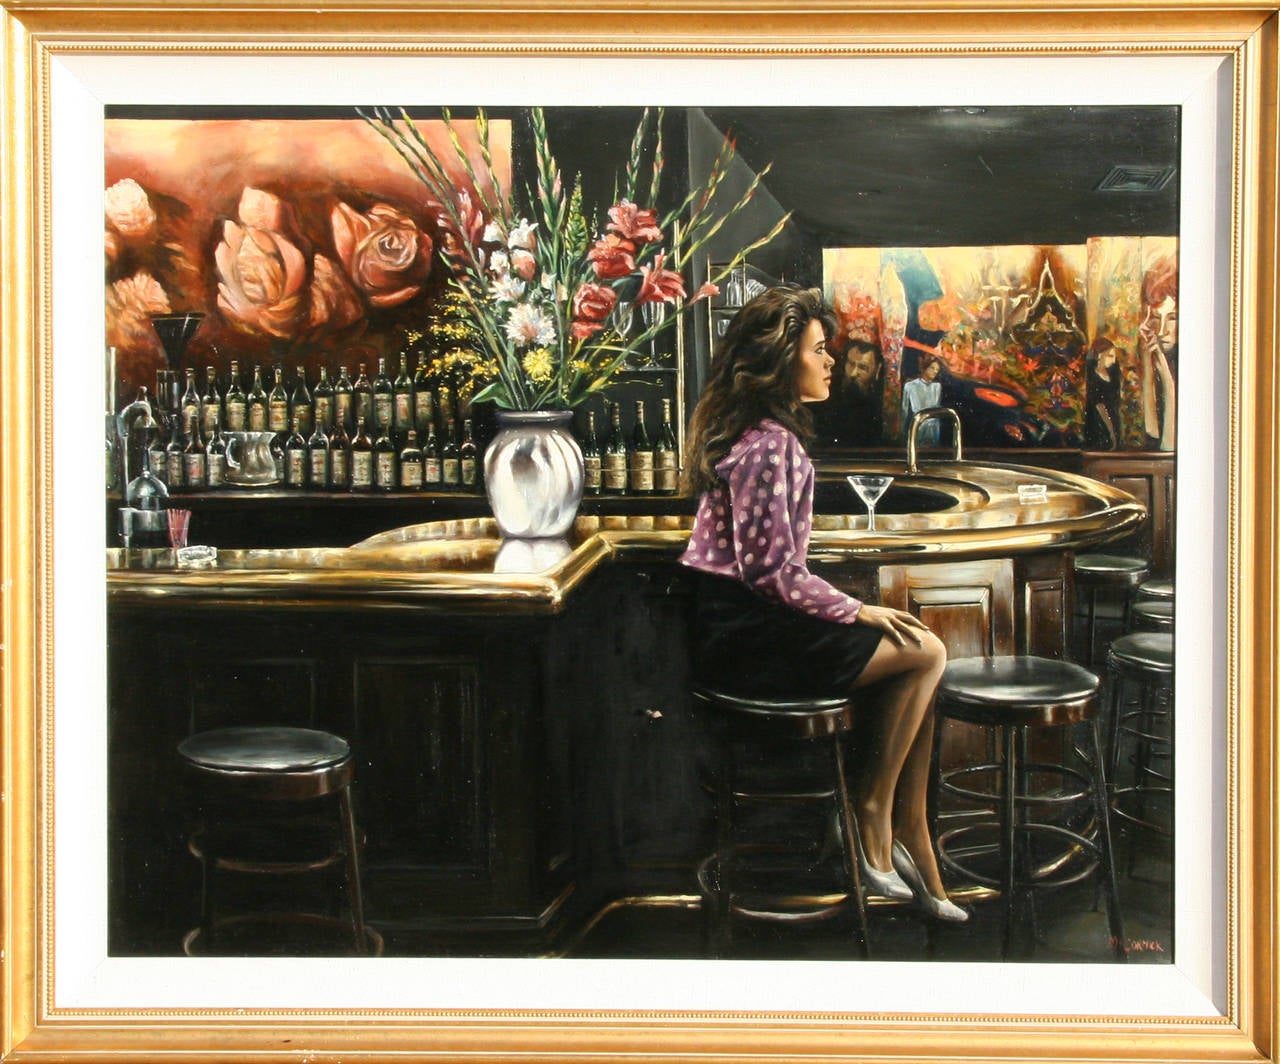 Une peinture à l'huile de Harry McCormick datant de 1990. Une scène tranquille d'une jeune femme assise dans un restaurant avec un éclairage dramatique. 

Artiste : Harry McCormick, Américain (1942 - )
Titre : Emilio's
Année : vers 1990
Médium :